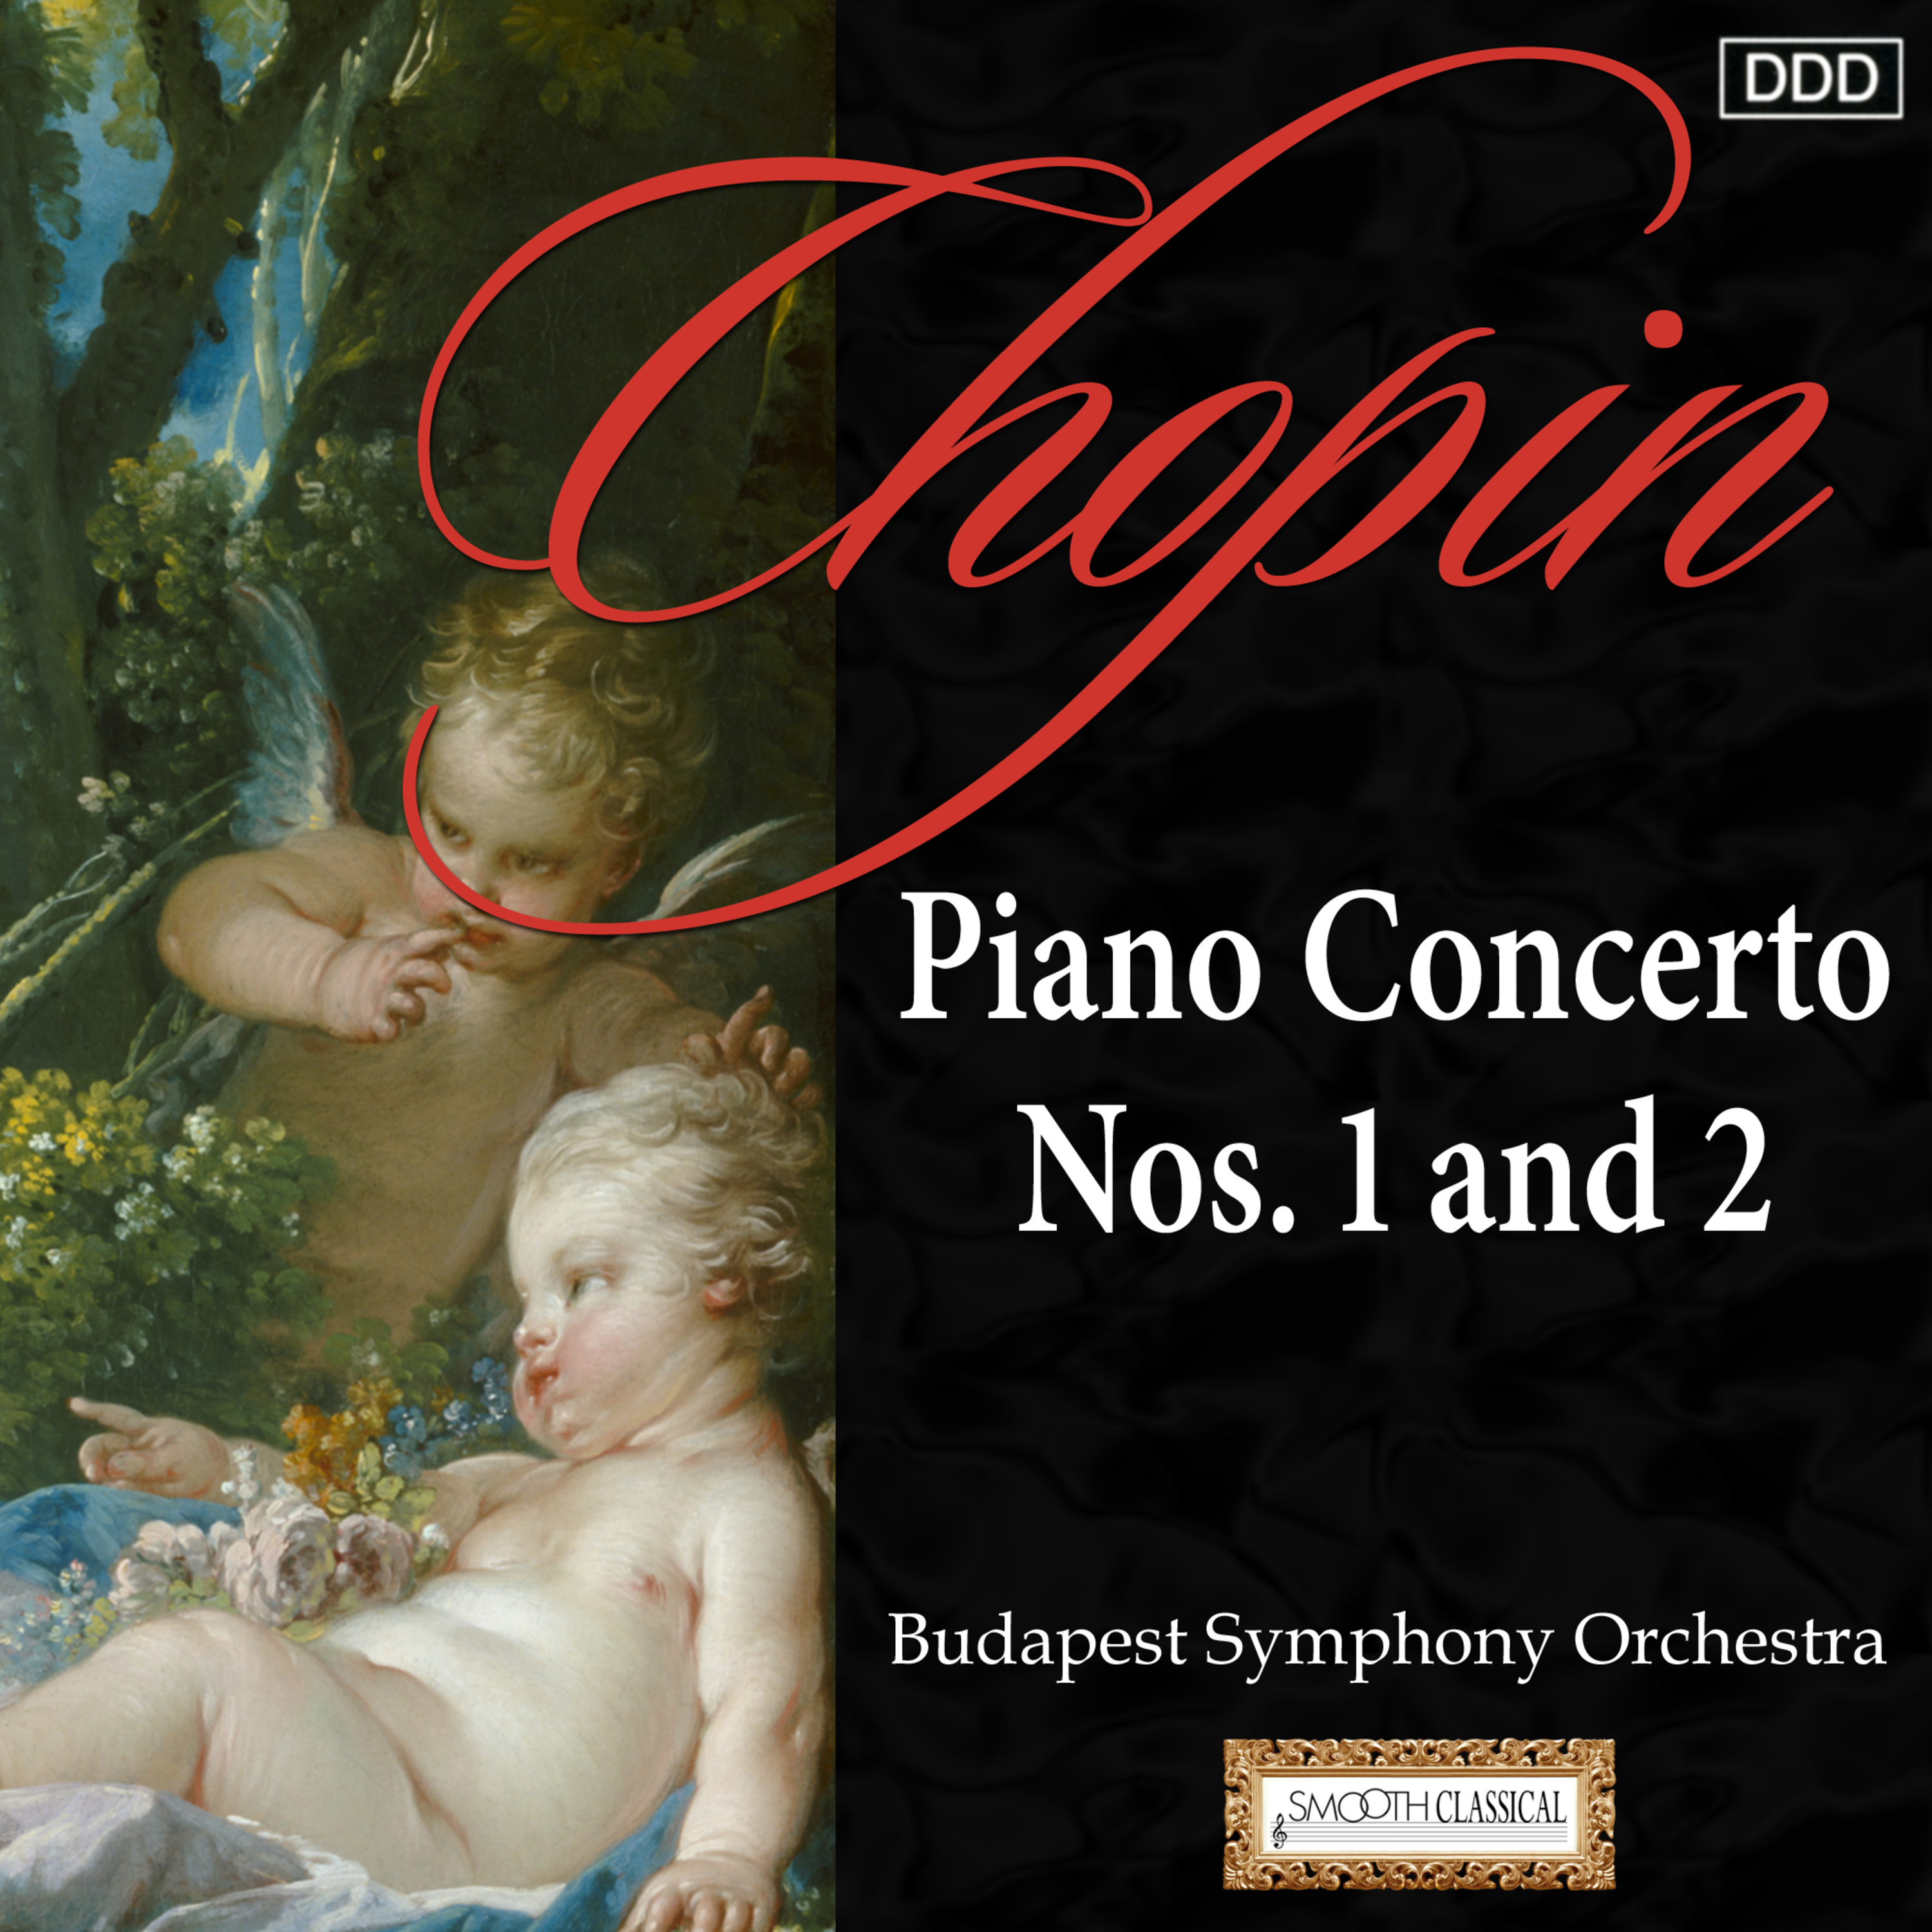 Piano Concerto No. 1 in E minor, Op. 11: I. Allegro maestoso